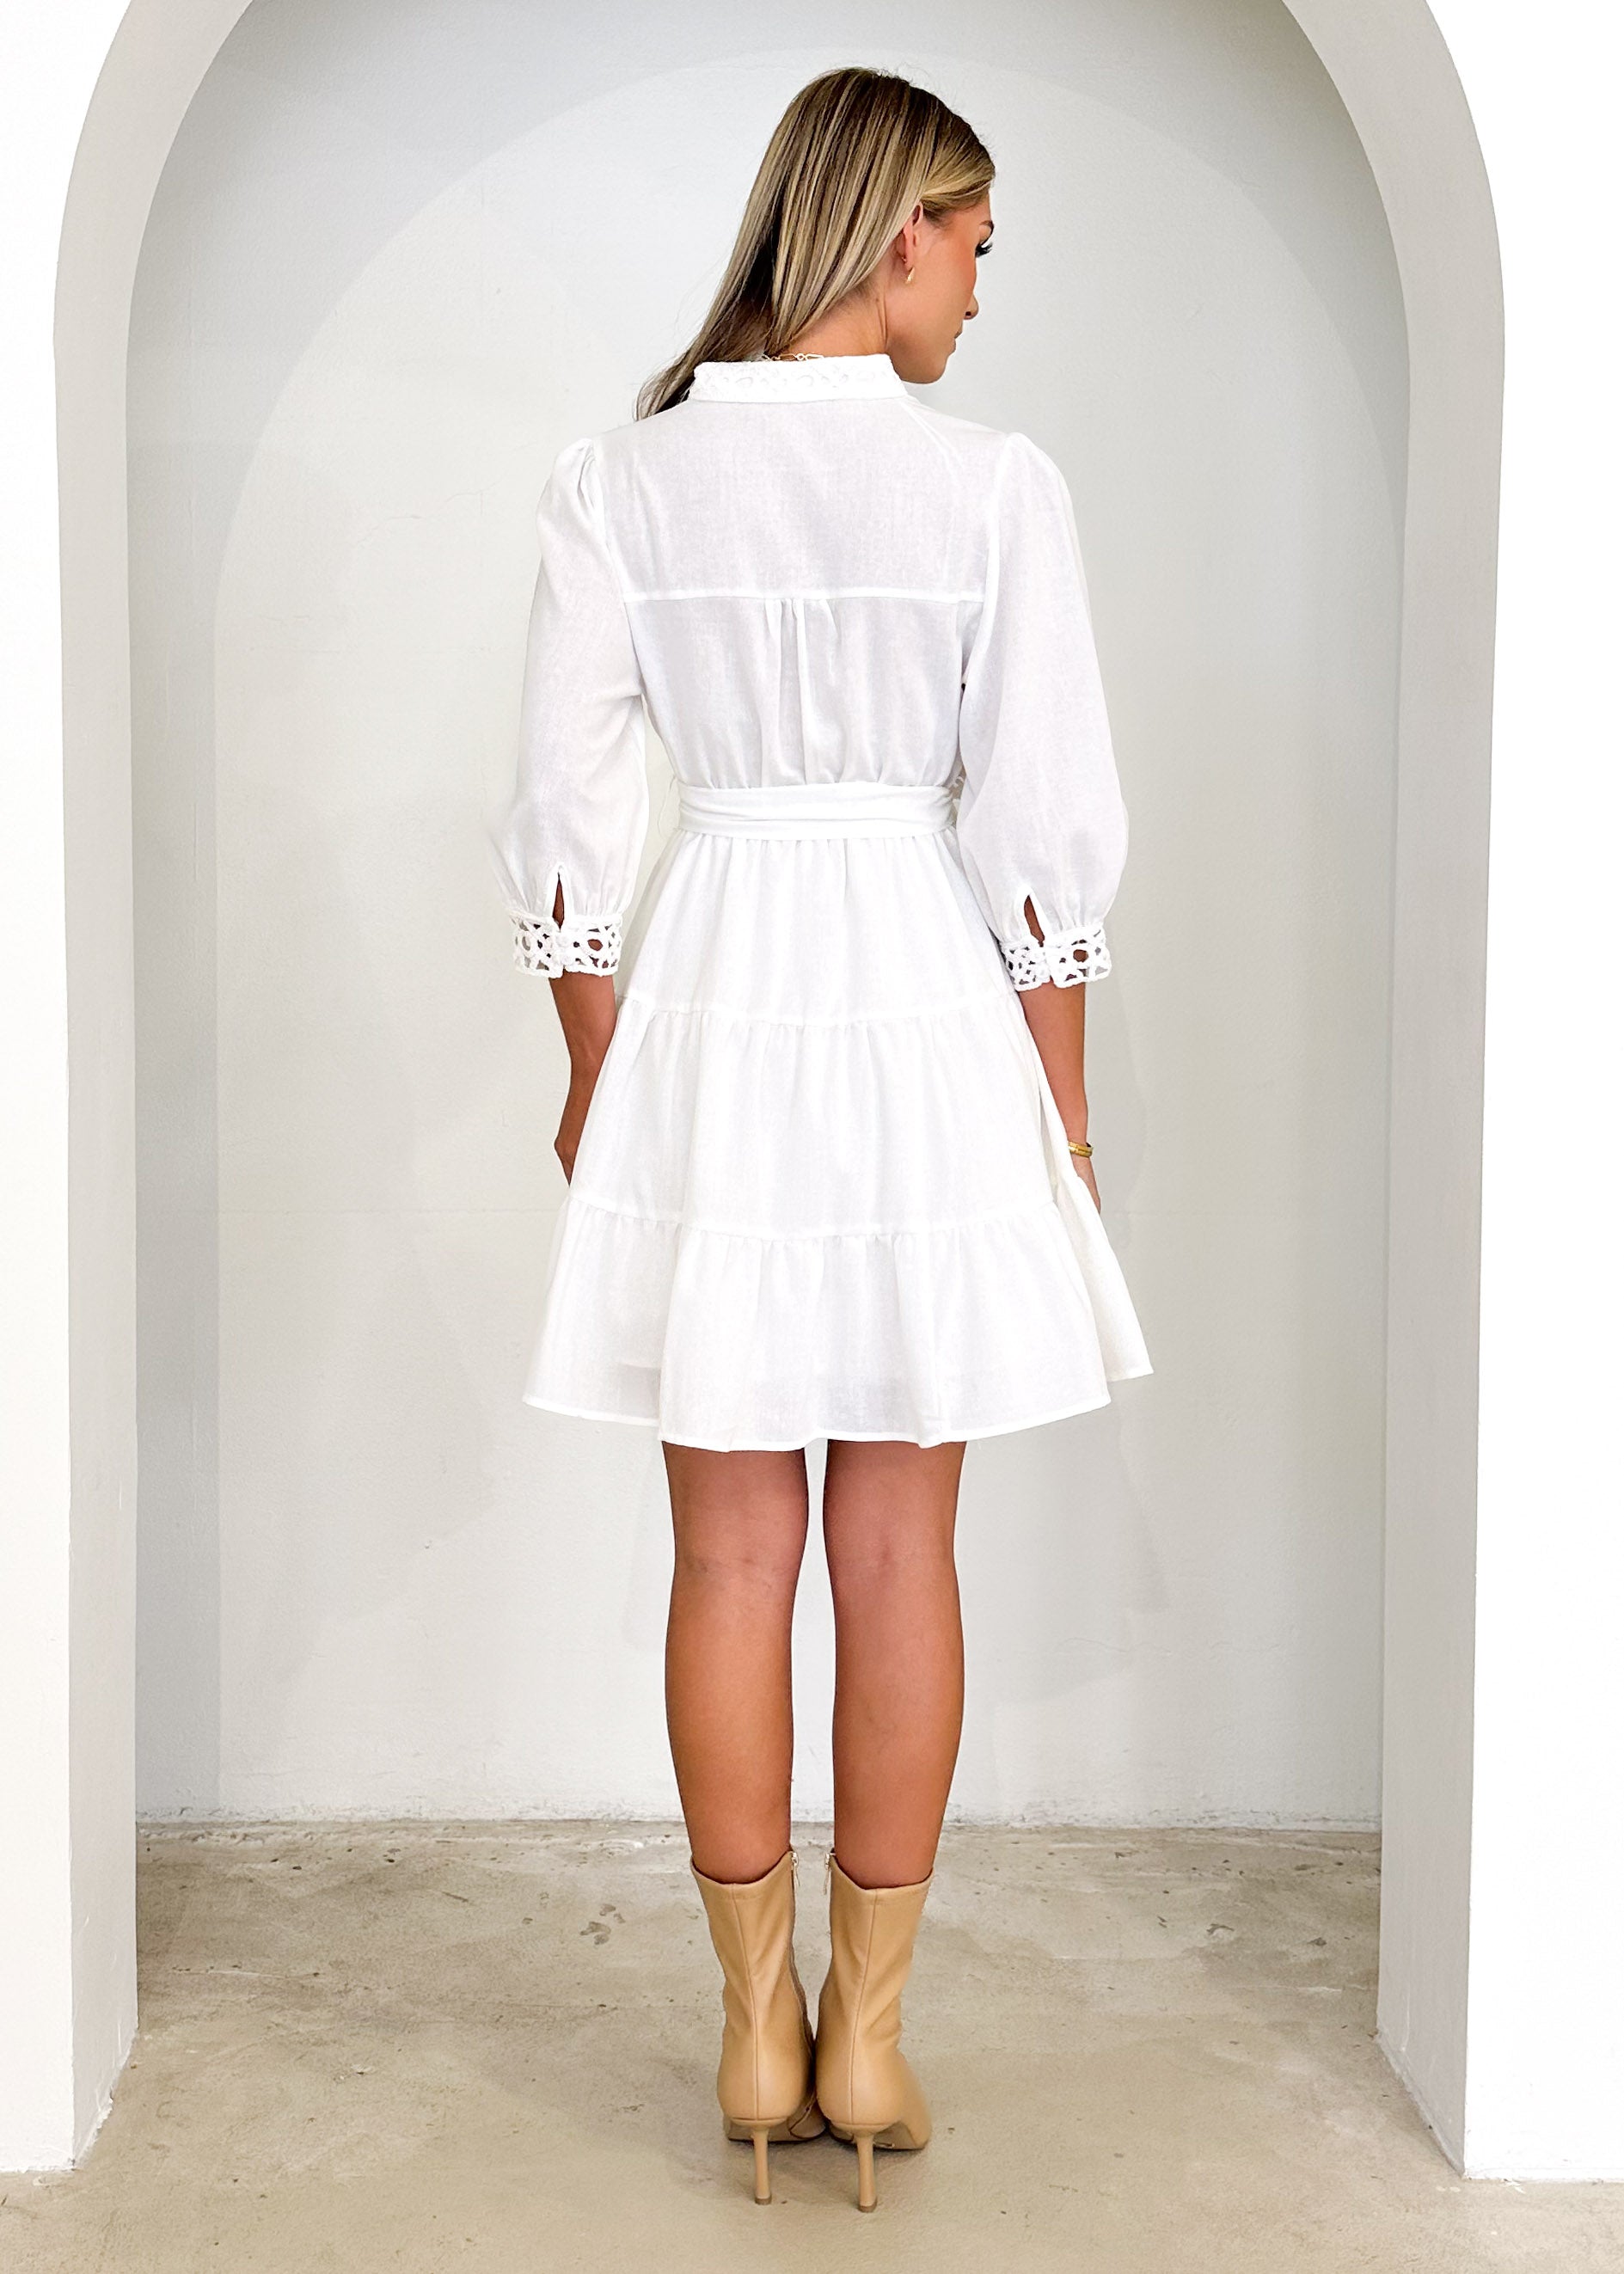 Nourla Dress - Off White